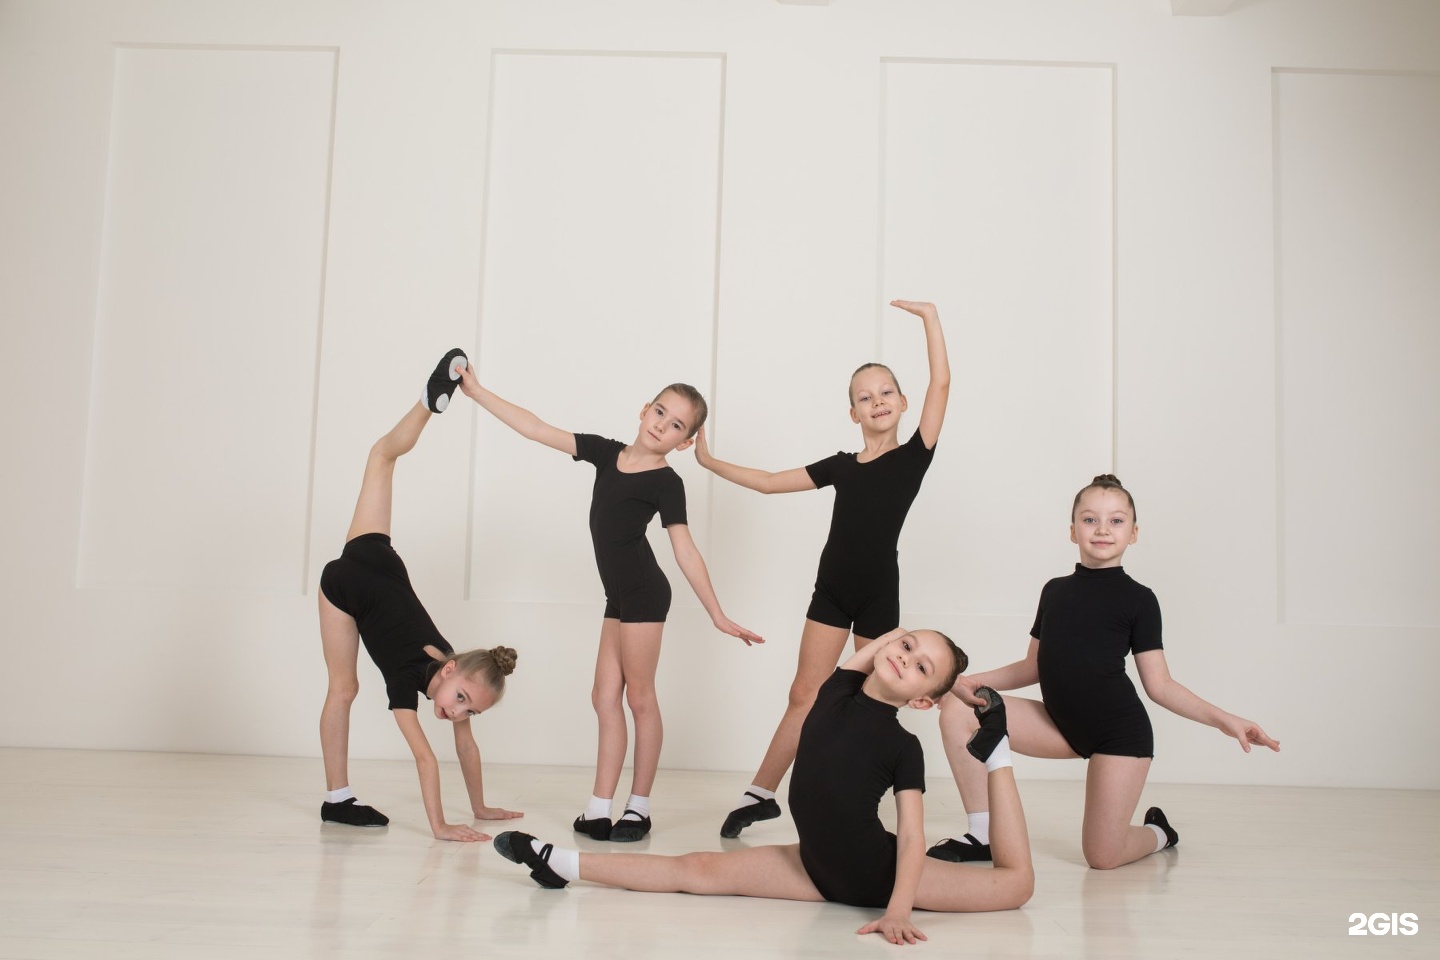 Студия детского эстрадного танца. Alba Dance Studio Тольятти. Топ лучших танцевальных студий в Тольятти. Школа танцев записаться